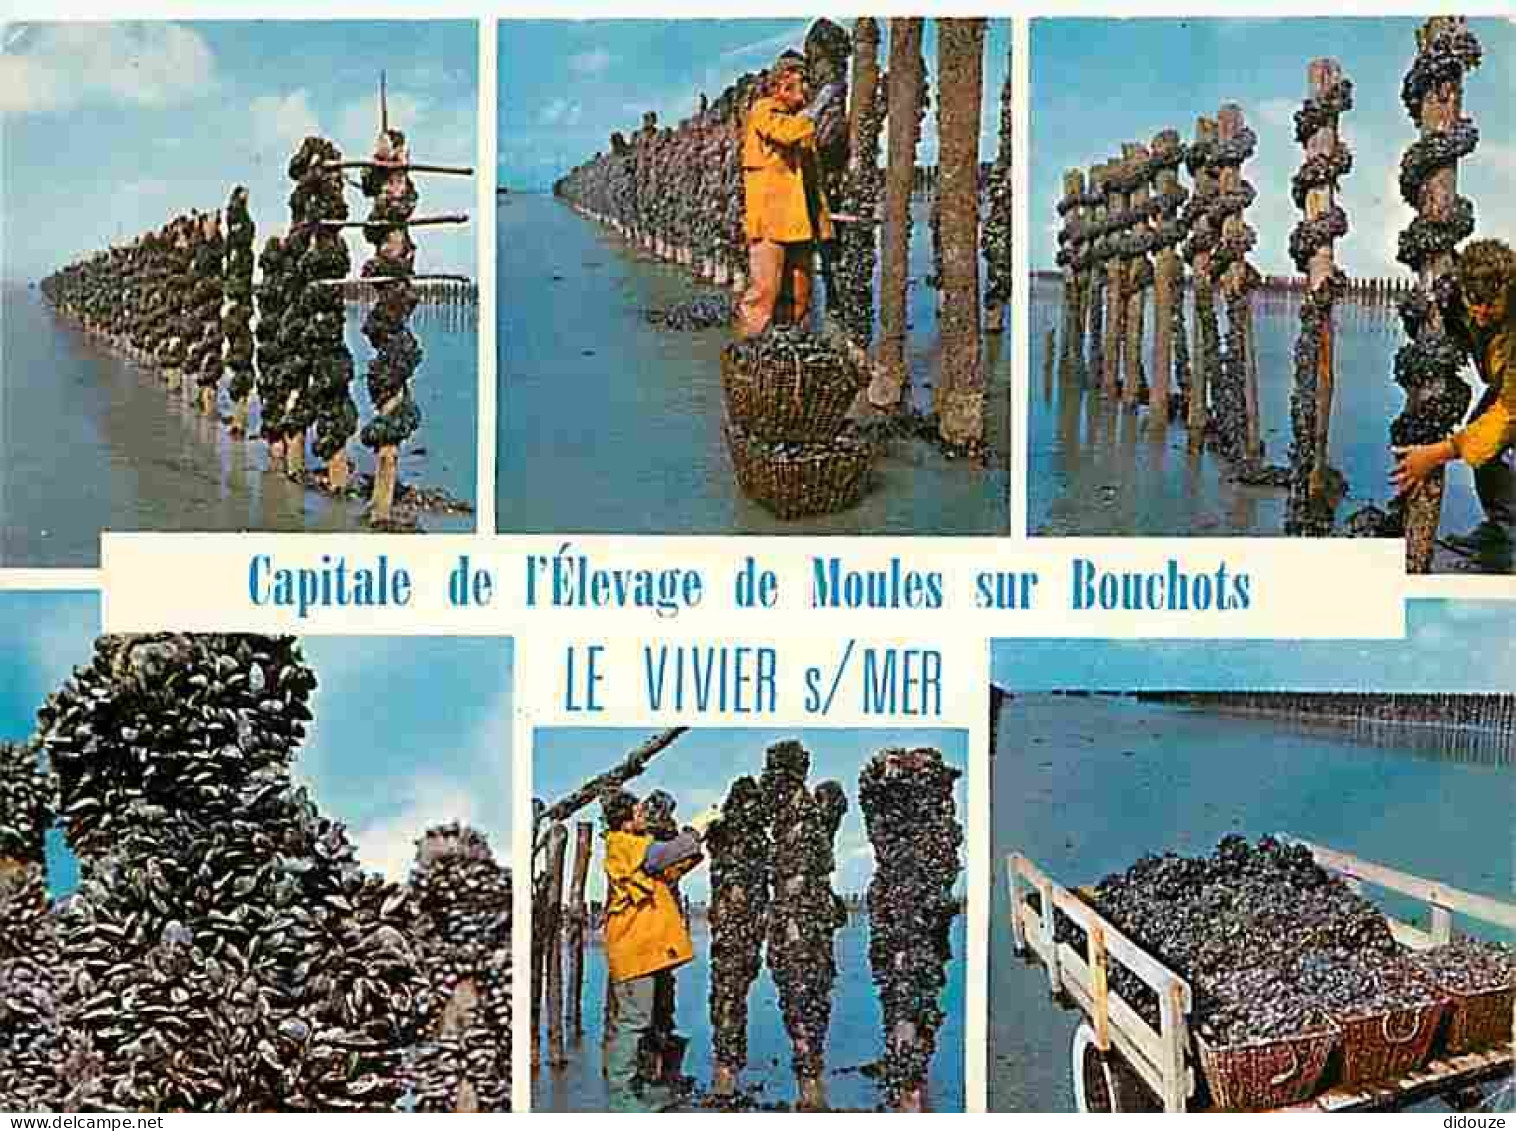 Metiers - Mytiliculture - Culture Des Moules - Mytilicultureur - Le Vivier Sur Mer - Capitale De L'èlevage Des Moules De - Pêche